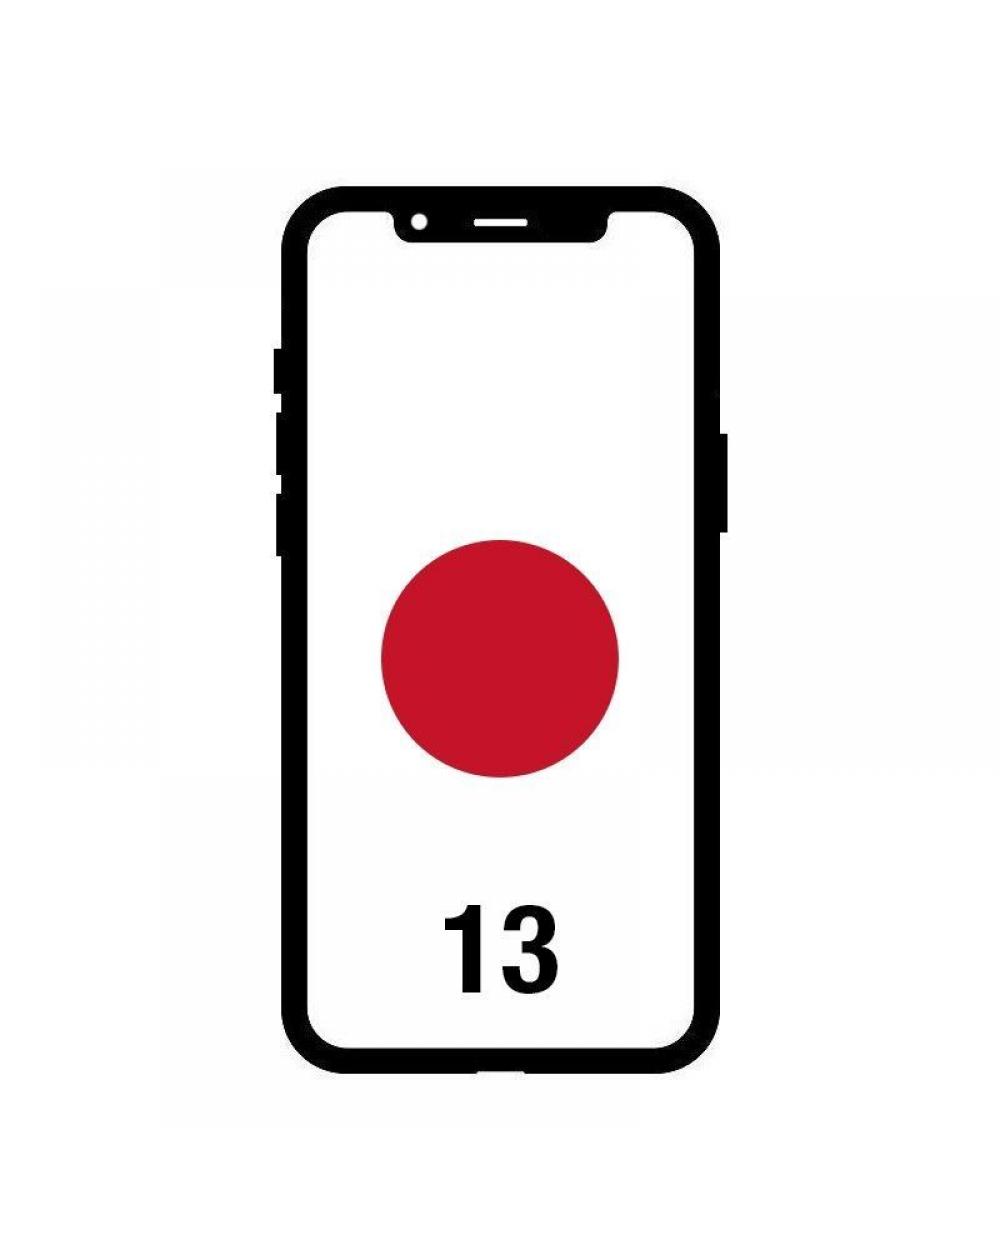 Smartphone Apple iPhone 13 128GB/ 6.1'/ 5G/ Rojo - Imagen 1